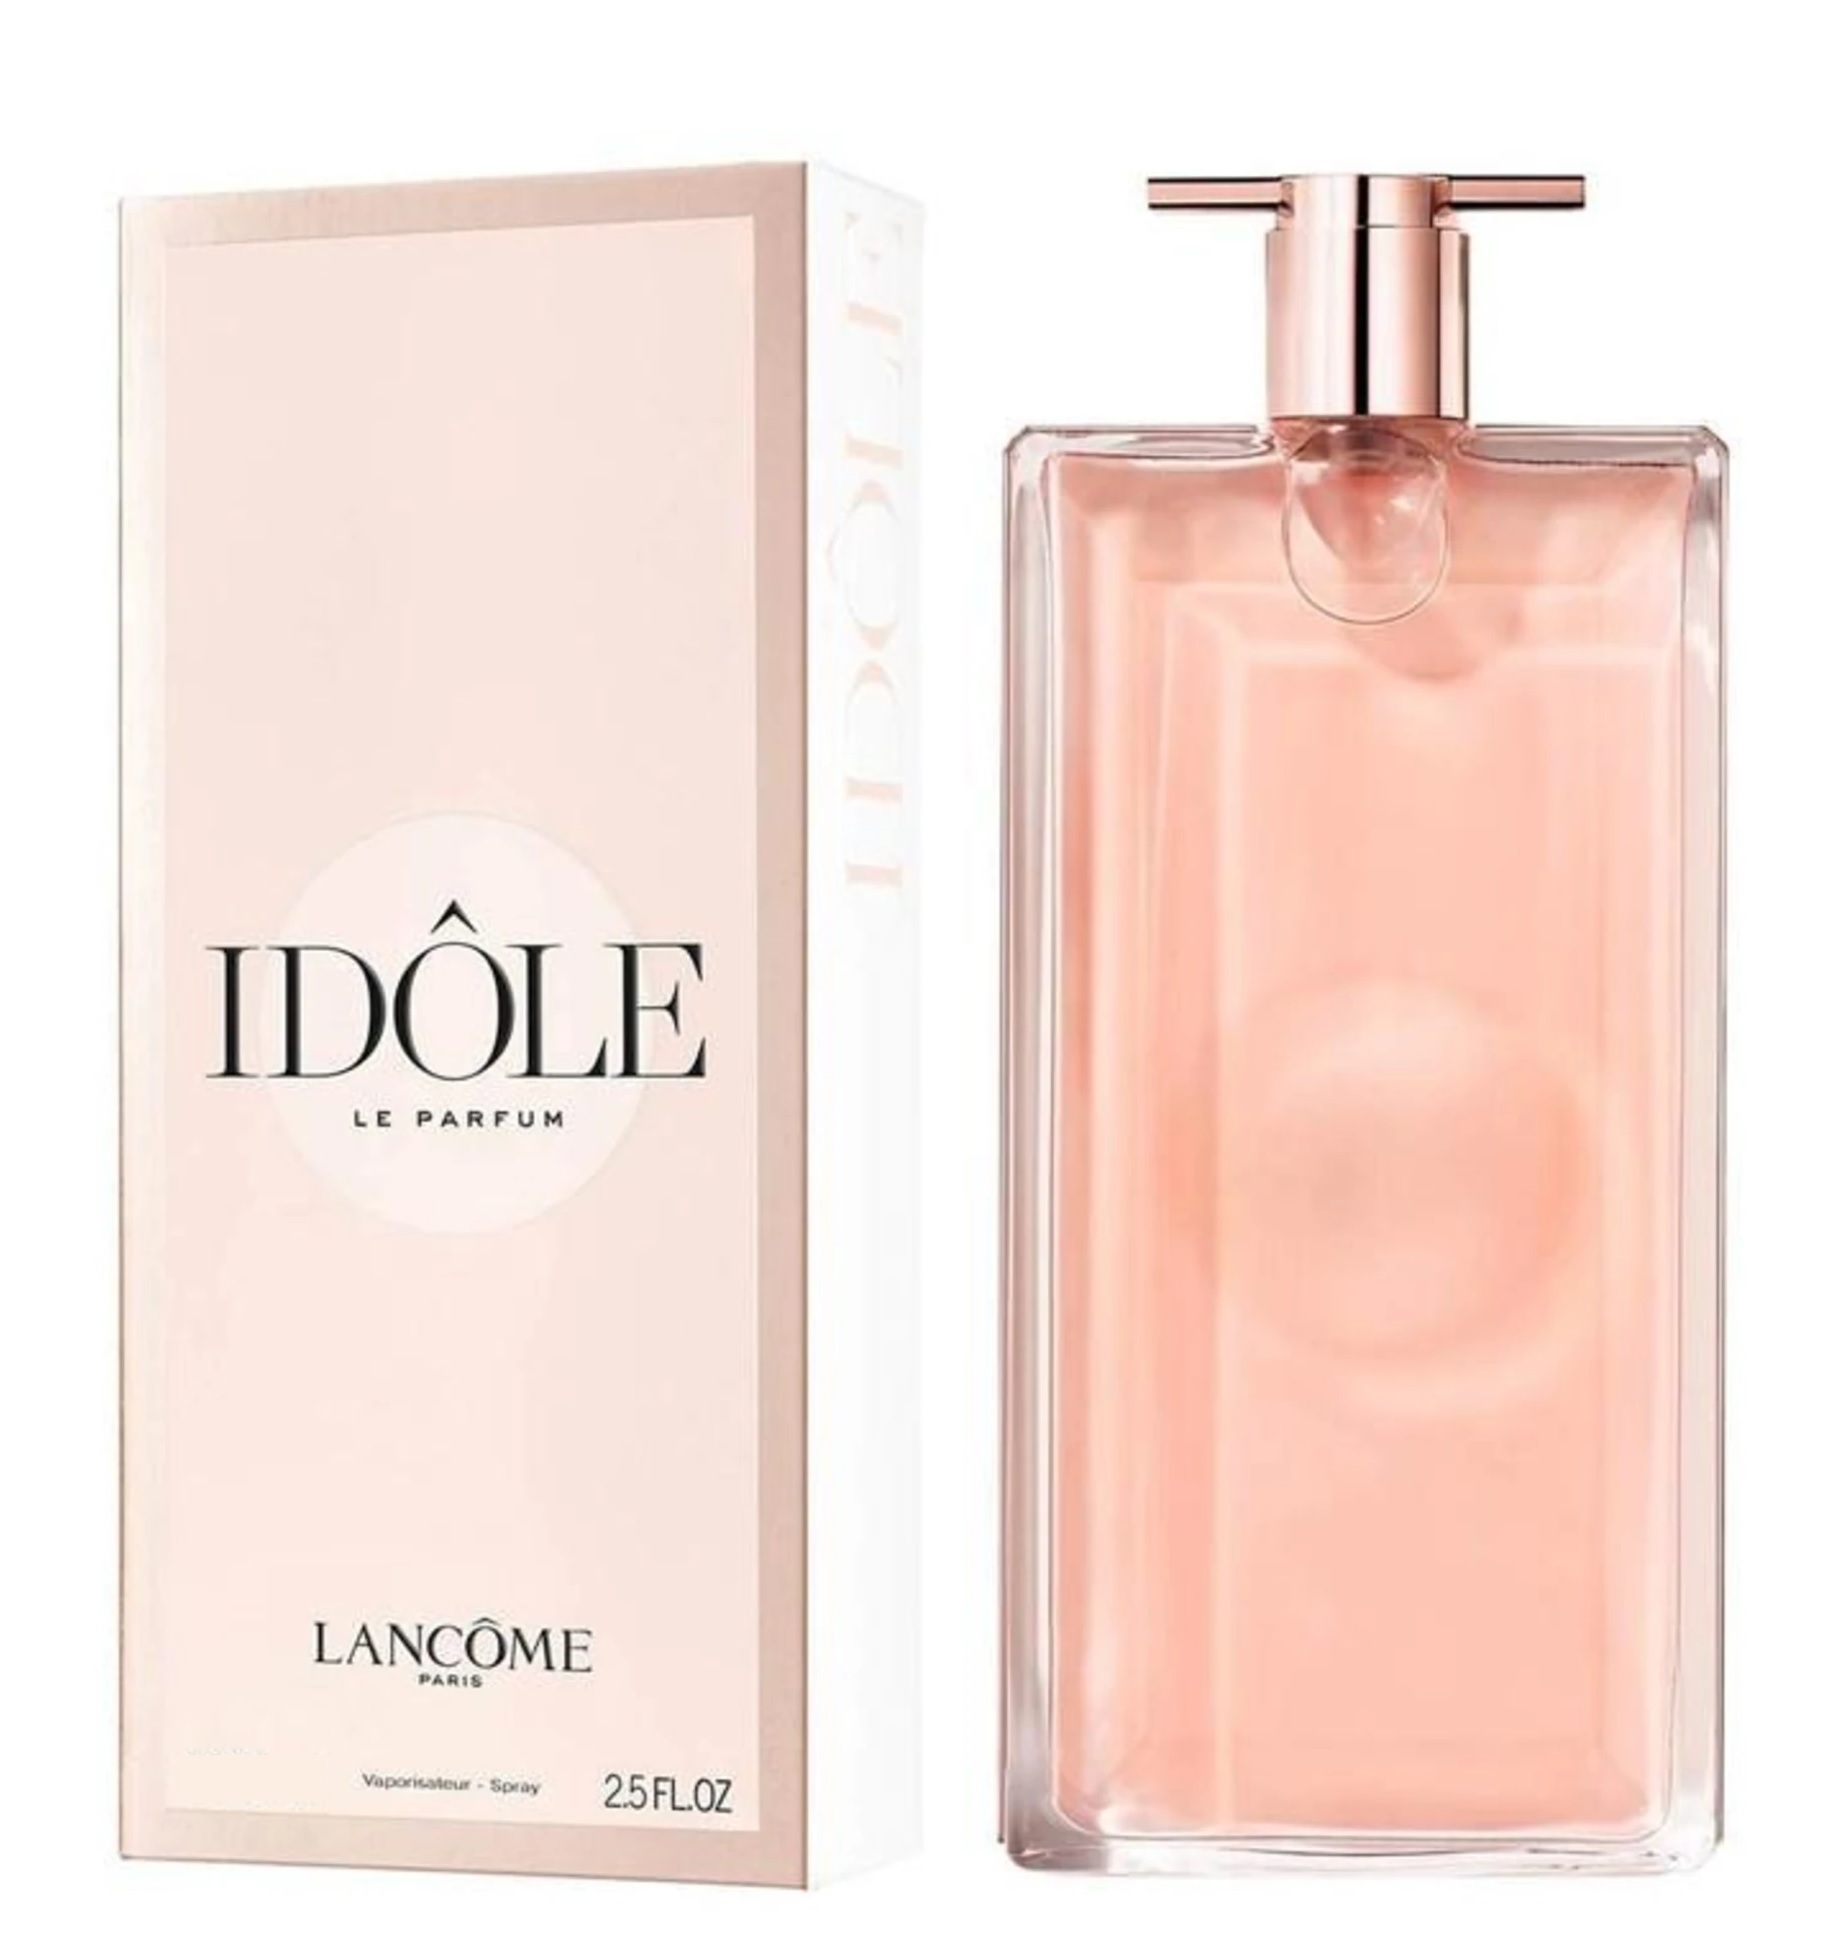 Аромат идол. Lancome Idole, 75 ml. Lancome Idole le Parfum 75 мл. Lancome Idole 25ml. Lancome Idole EDP 25 ml.